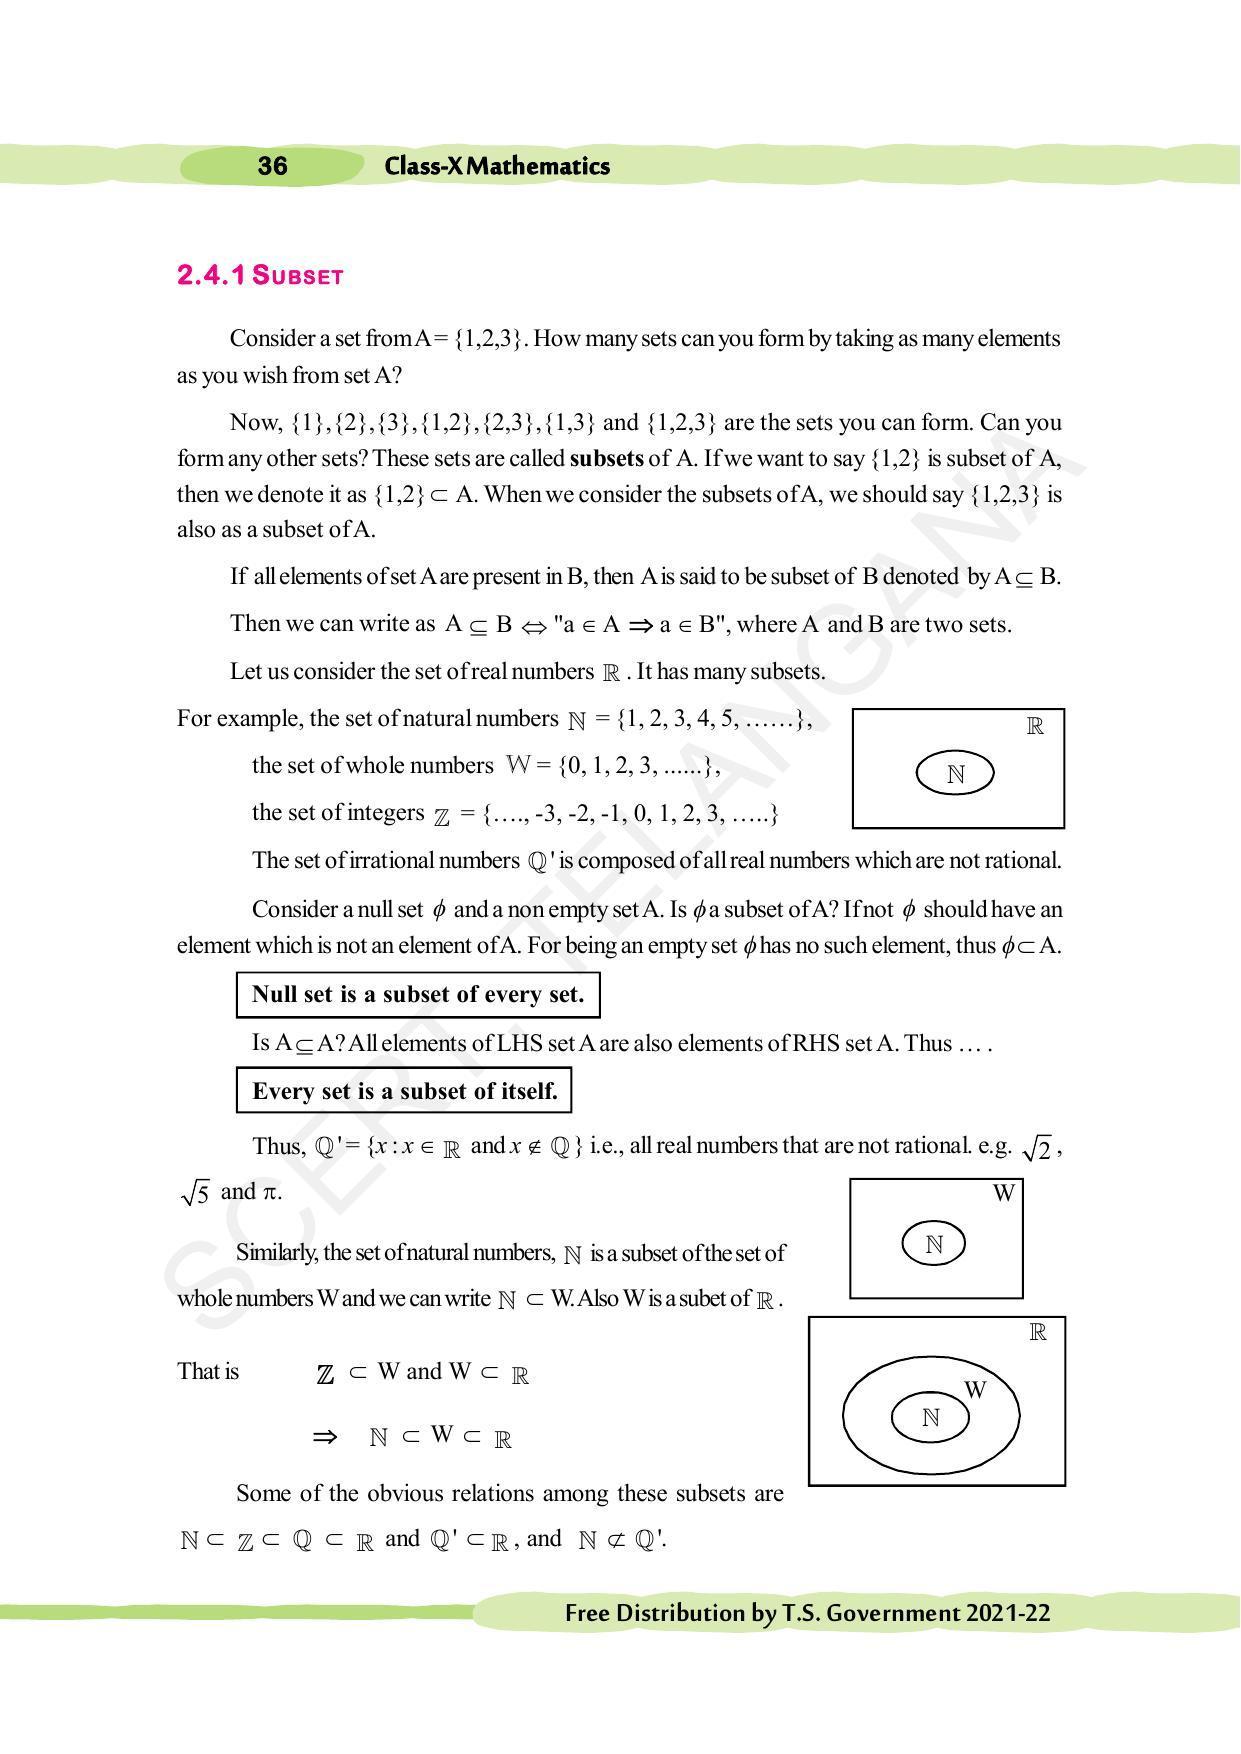 TS SCERT Class 10 Maths (English Medium) Text Book - Page 46